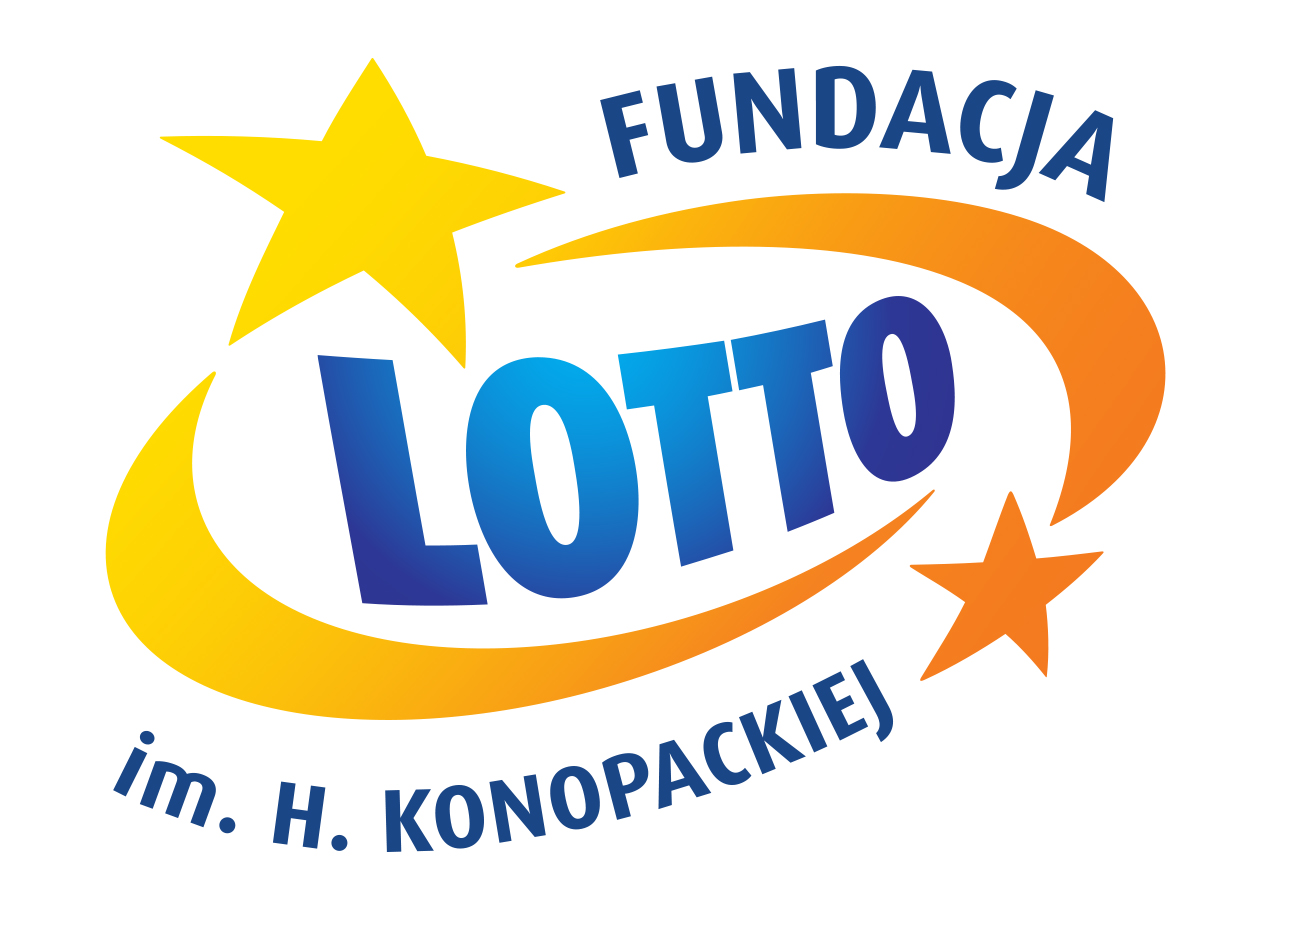 logo-fundacja-lotto-jpg.jpg